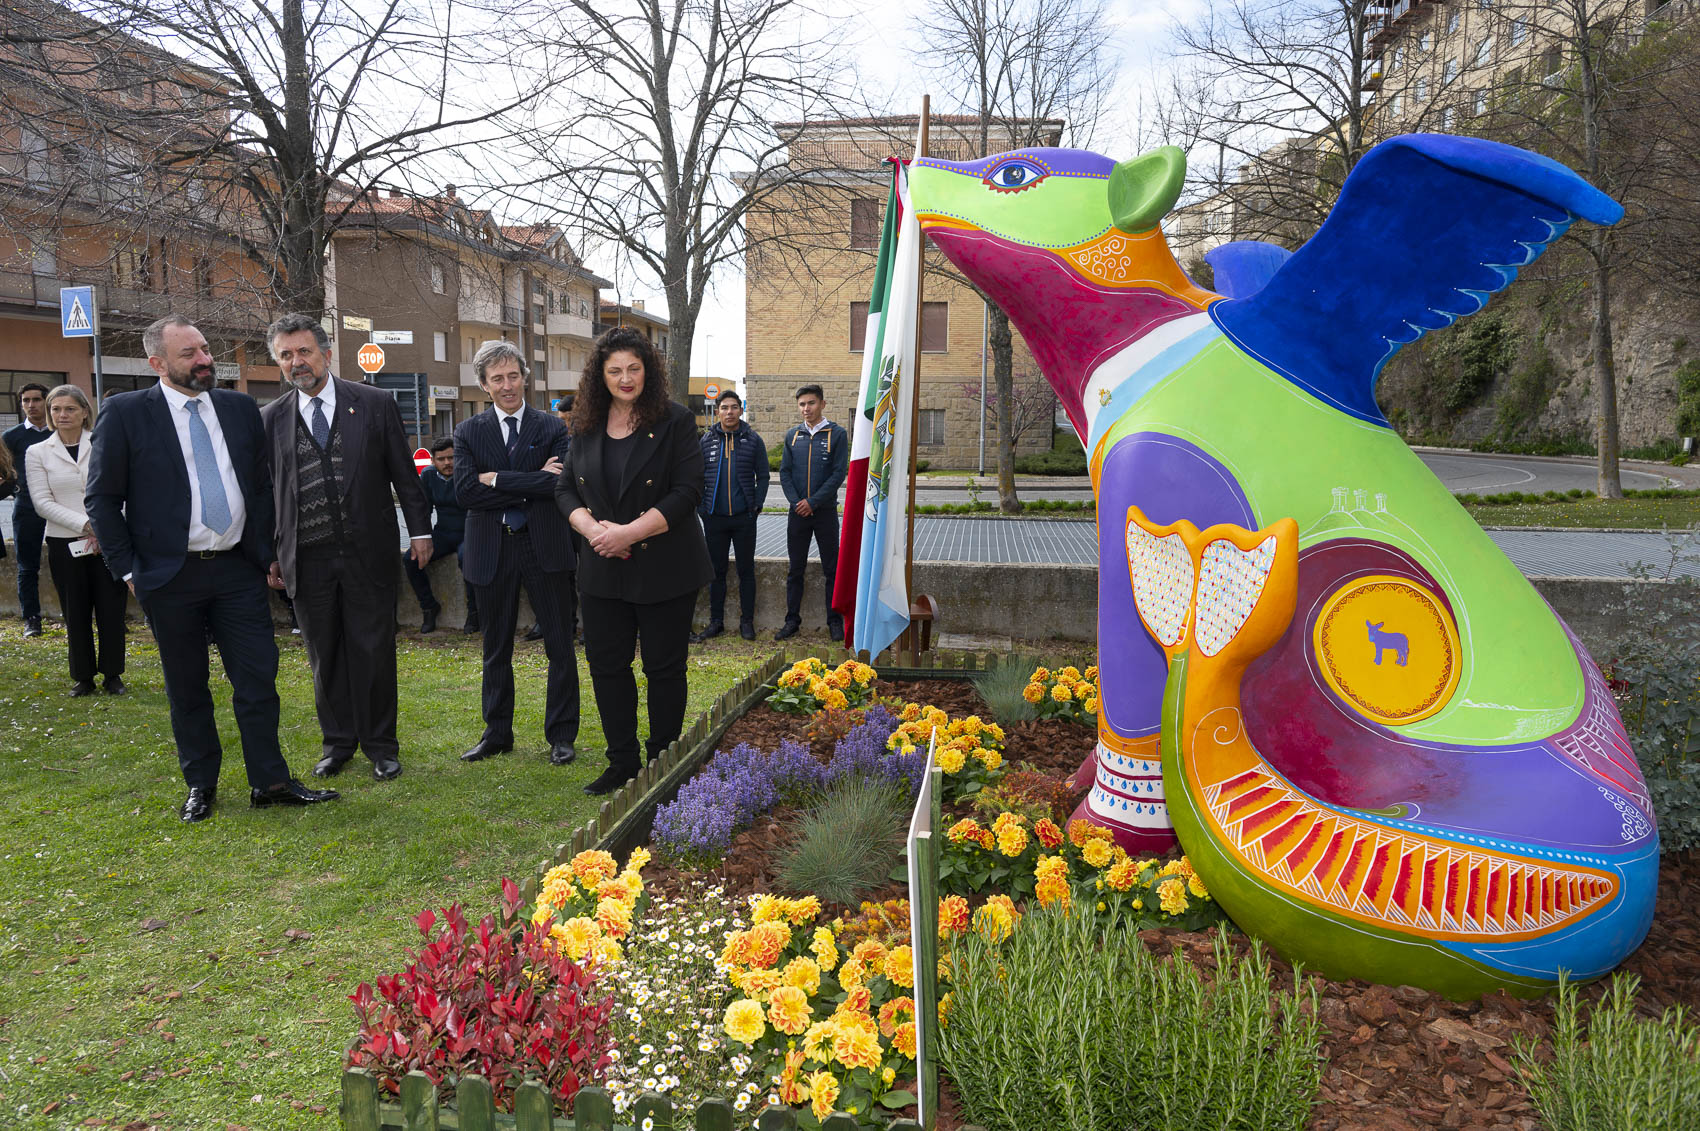 Una statua per celebrare i primi 15 anni di amicizia tra San Marino e Messico